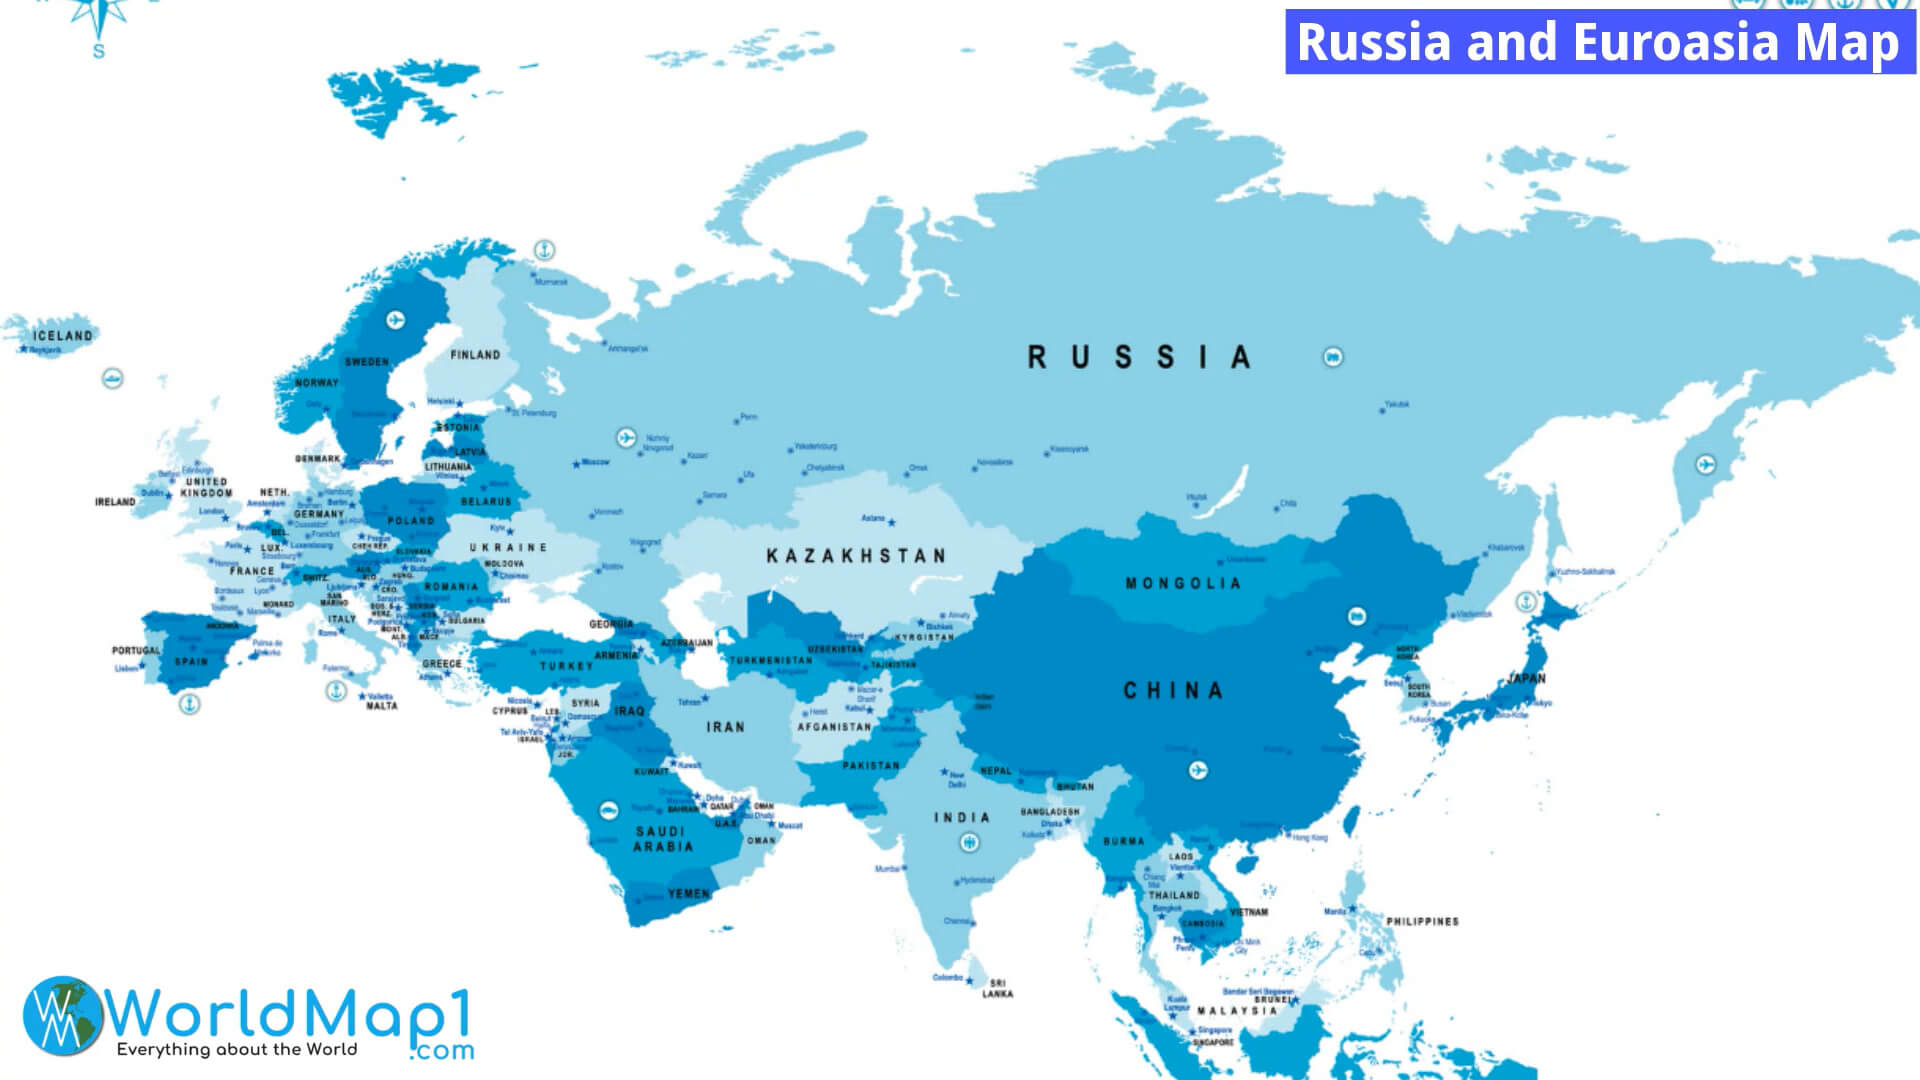 Russia and Euroasia Map